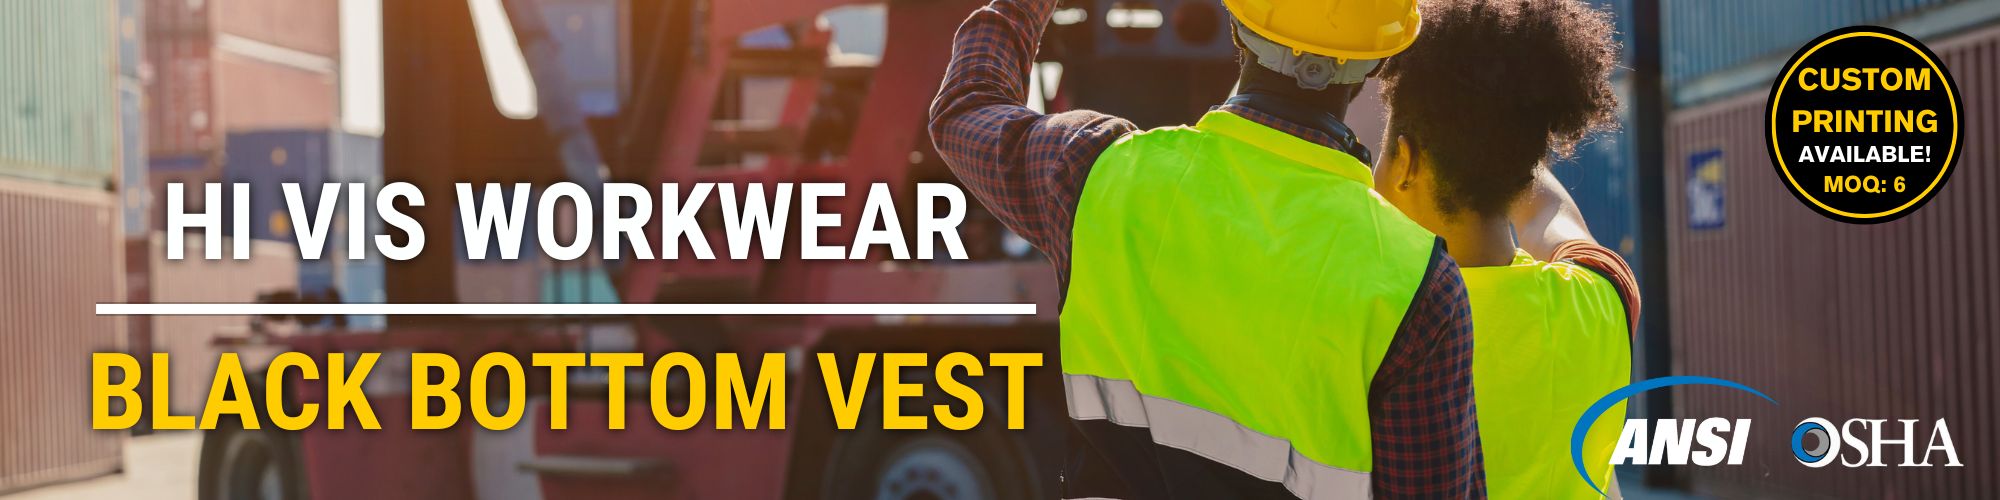 hi vis workwear black bottom reflective safety vest